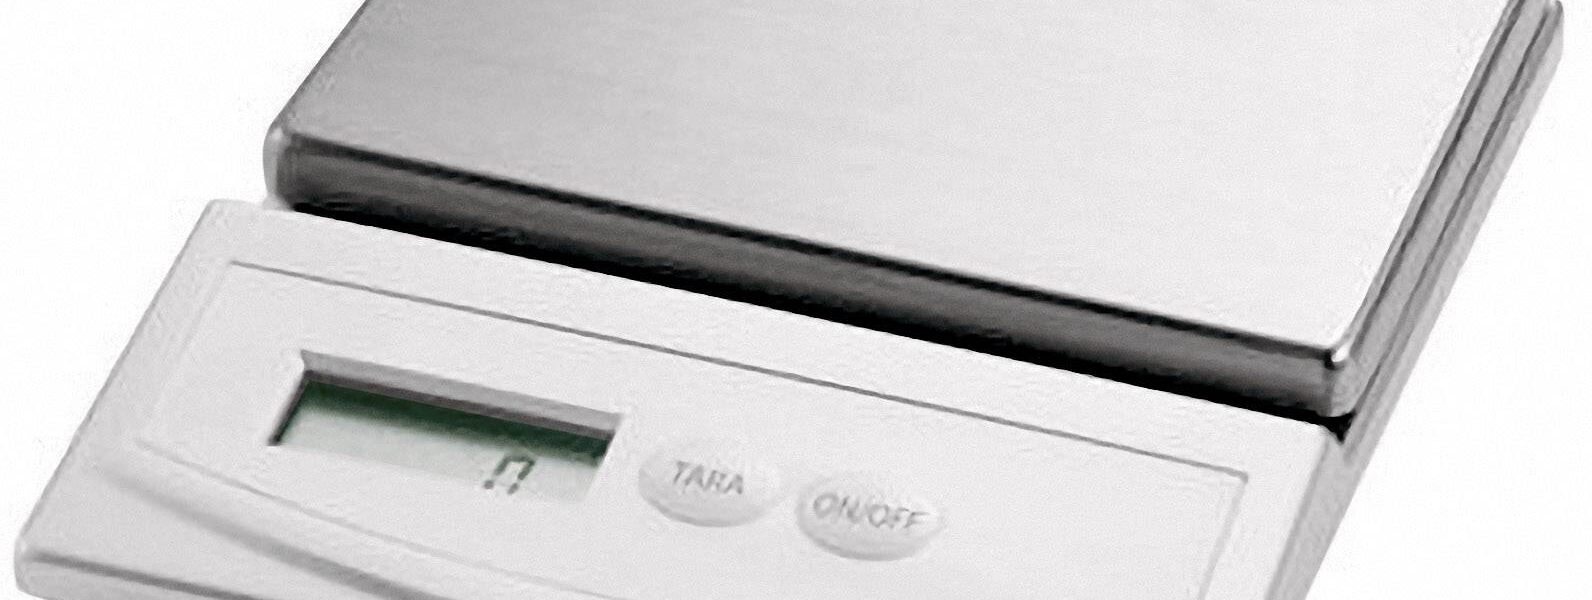 Digitálna digitálna kuchynská váha FIAP 2051